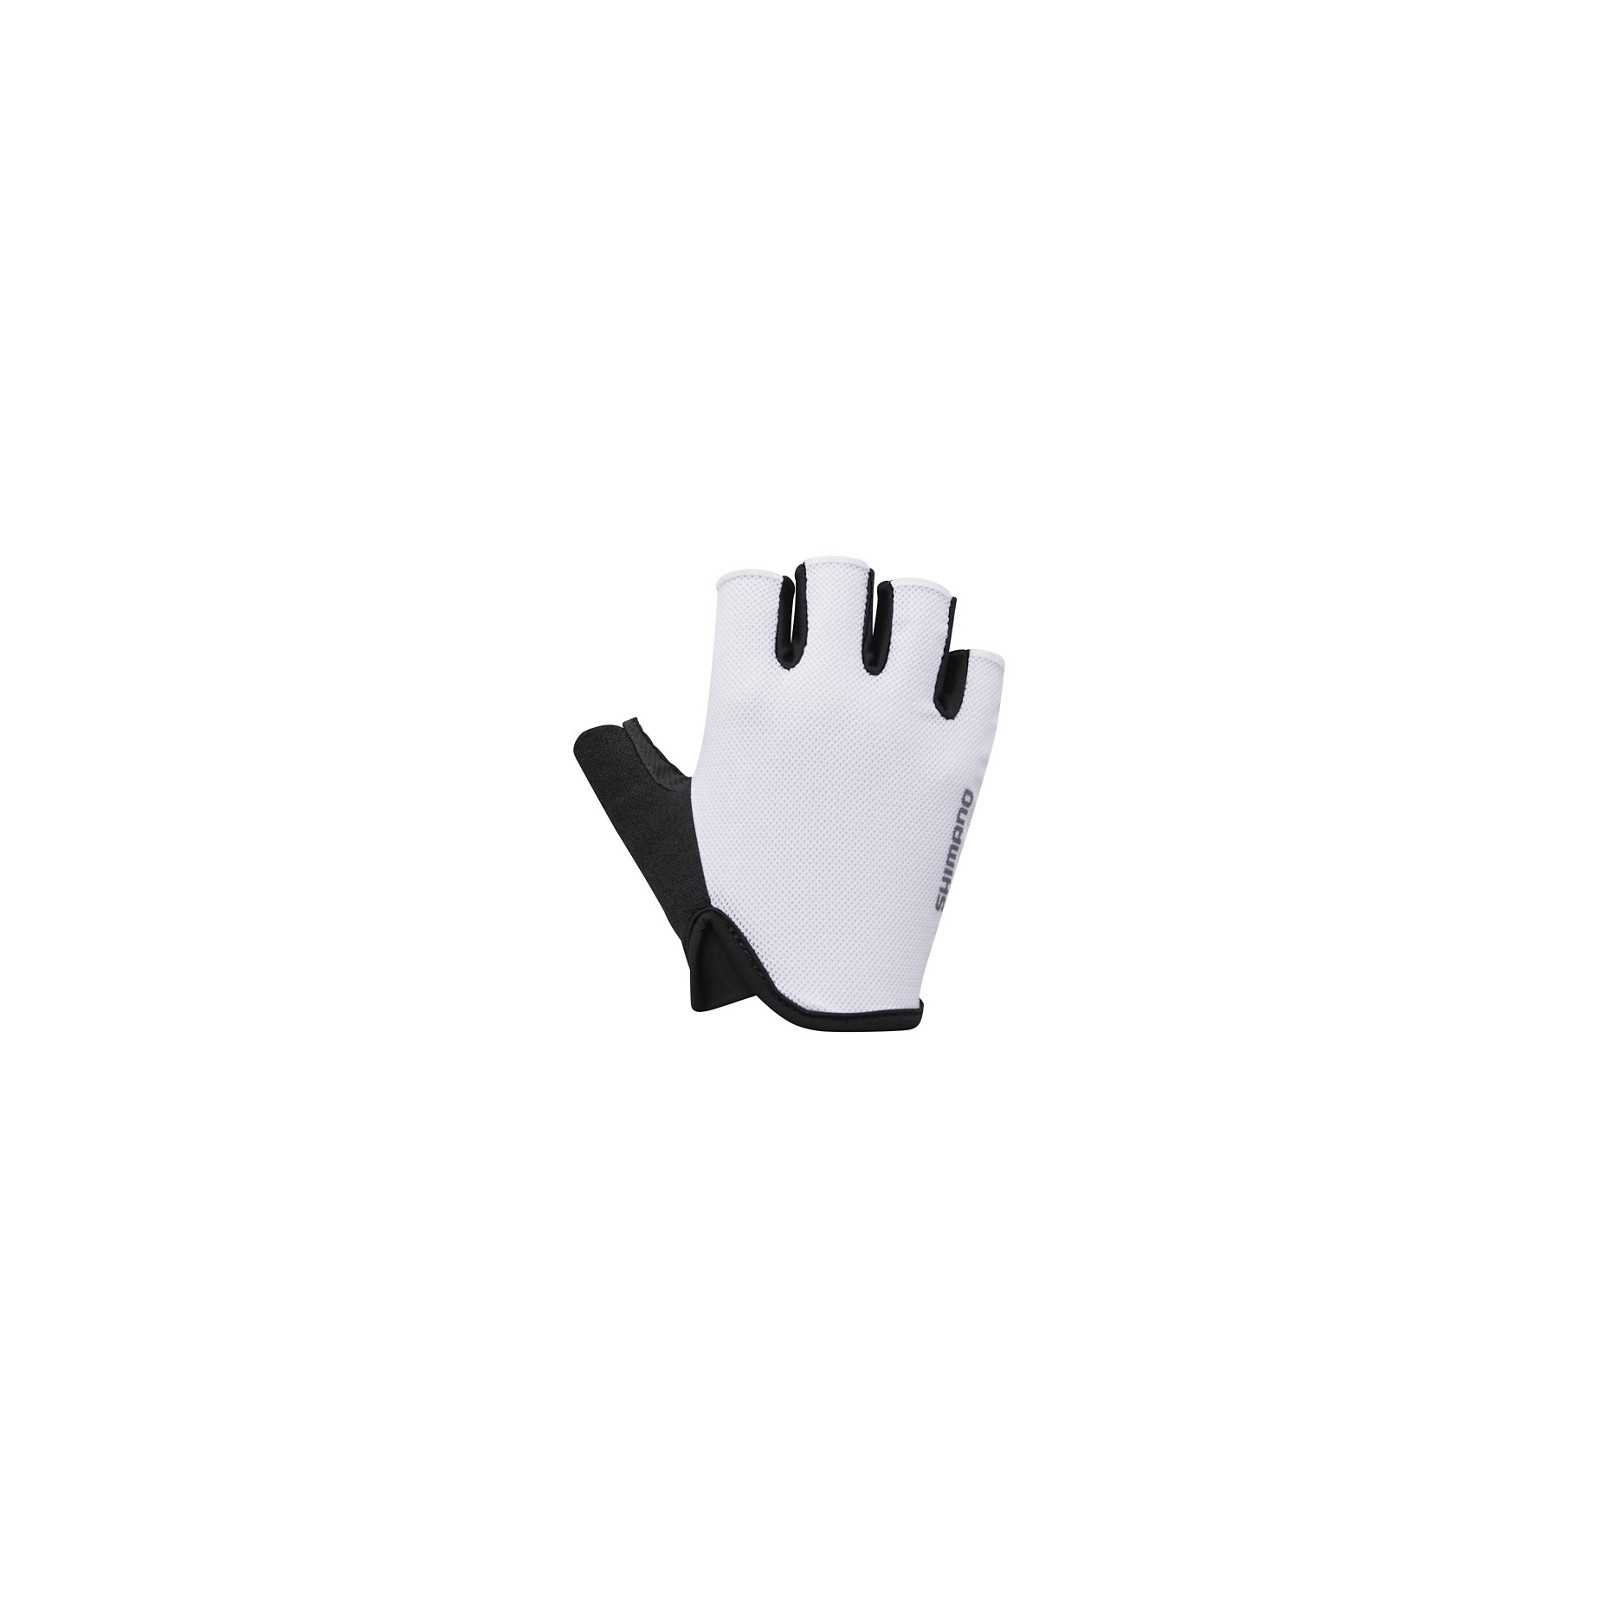 Rękawiczki Shimano damskie Airway białe M - CWGLBSVS61WW0115